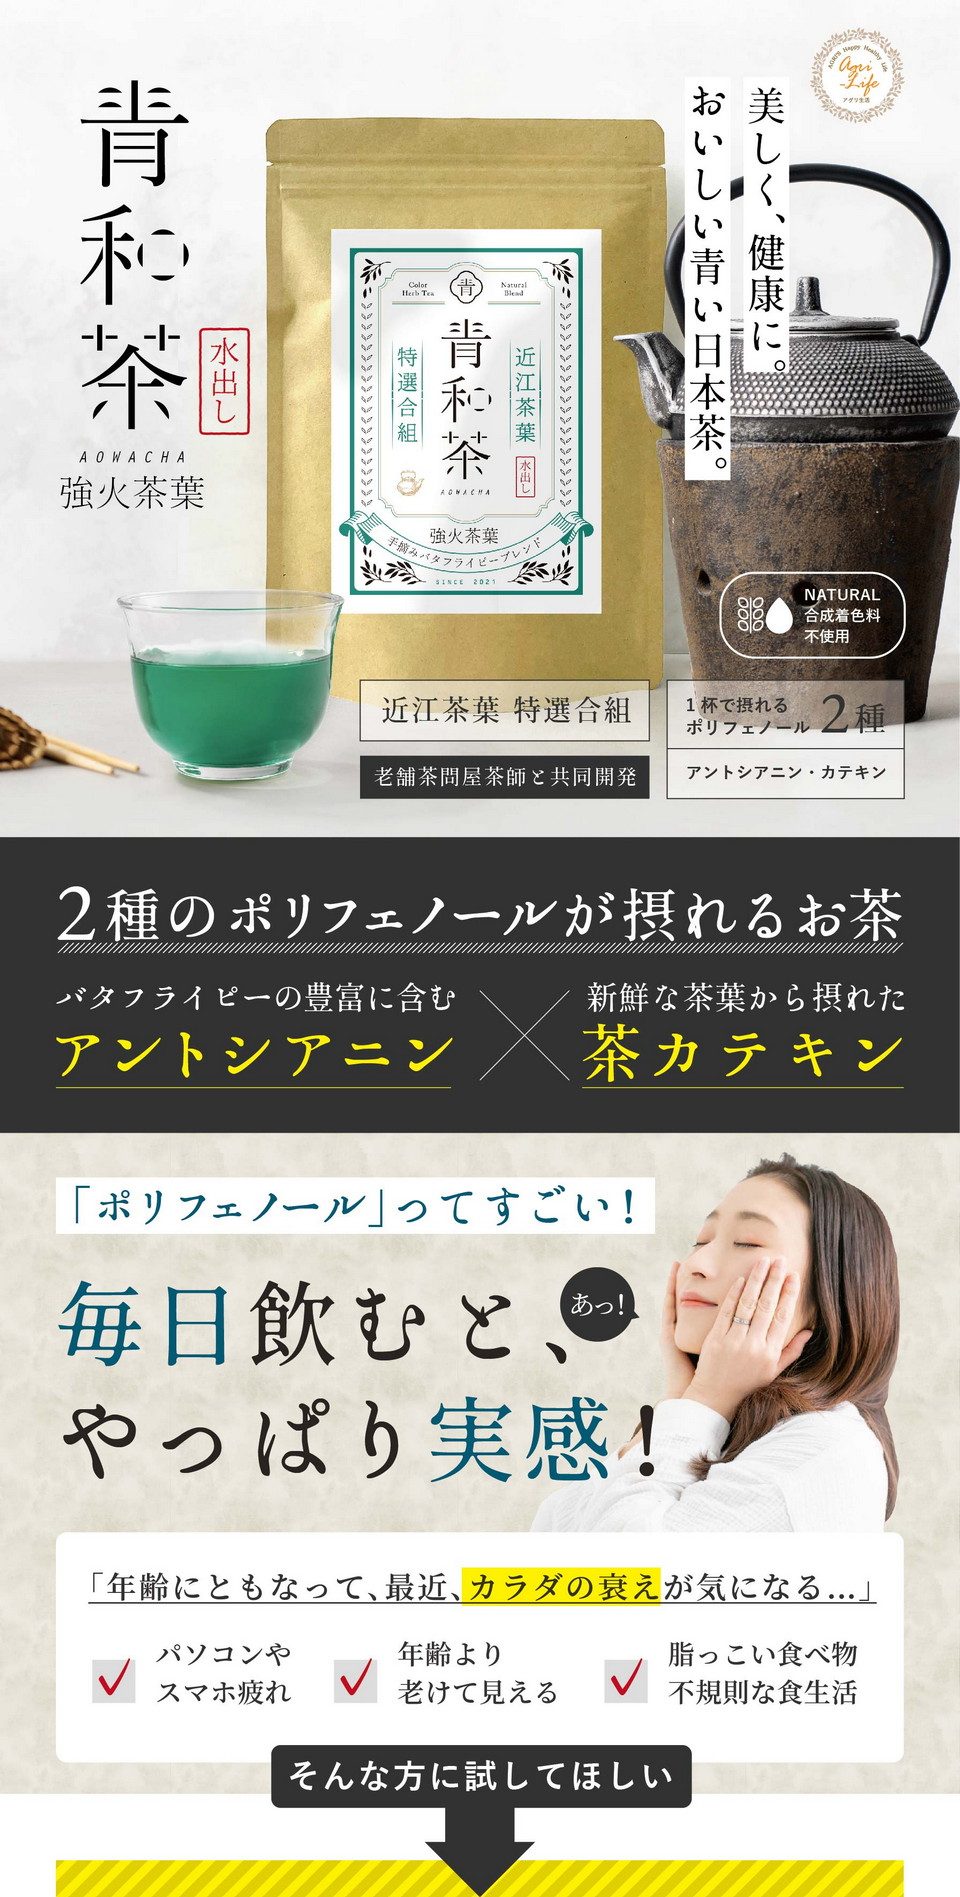 青和茶強火茶葉。美しく、健康に。おいしい青い日本茶。合成着色料不使用。近江茶葉特選合組。老舗茶問屋茶師と共同開発。2種のポリフェノールが摂れるお茶。バタフライピーの豊富に含むアントシアニン、新鮮な茶葉から摂れた茶カテキン。ポリフェノールってすごい！毎日飲むとやっぱり実感！「年齢にともなって最近カラダの衰えが気になる…」パソコンやスマホ疲れ・年齢より老けて見える・脂っこい食べ物不規則な食生活。そんな方に試してほしい。植物のチカラ「2種のポリフェノール」